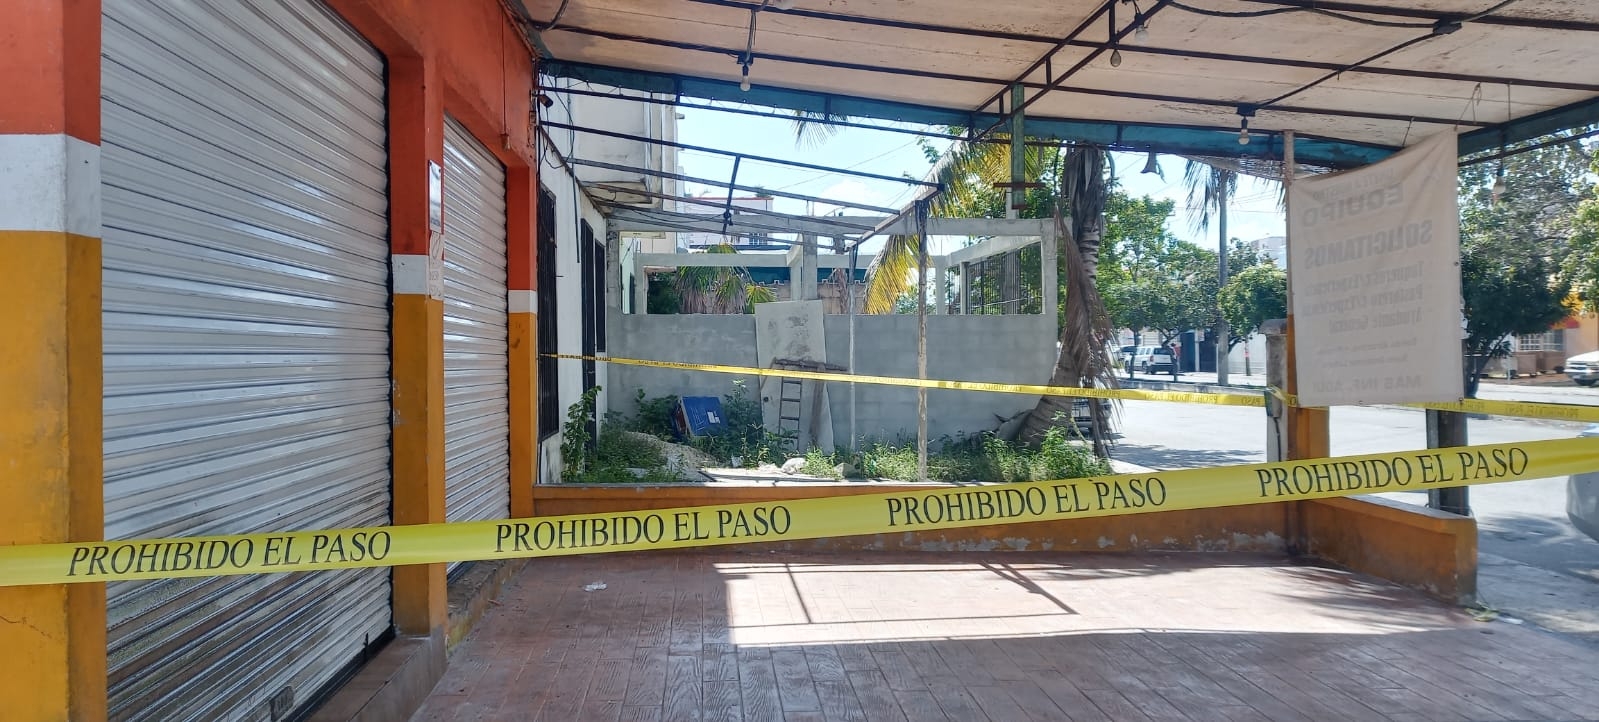 Ataque armado a la taquería 'Gaby' en Cancún habría quedado registrado en video